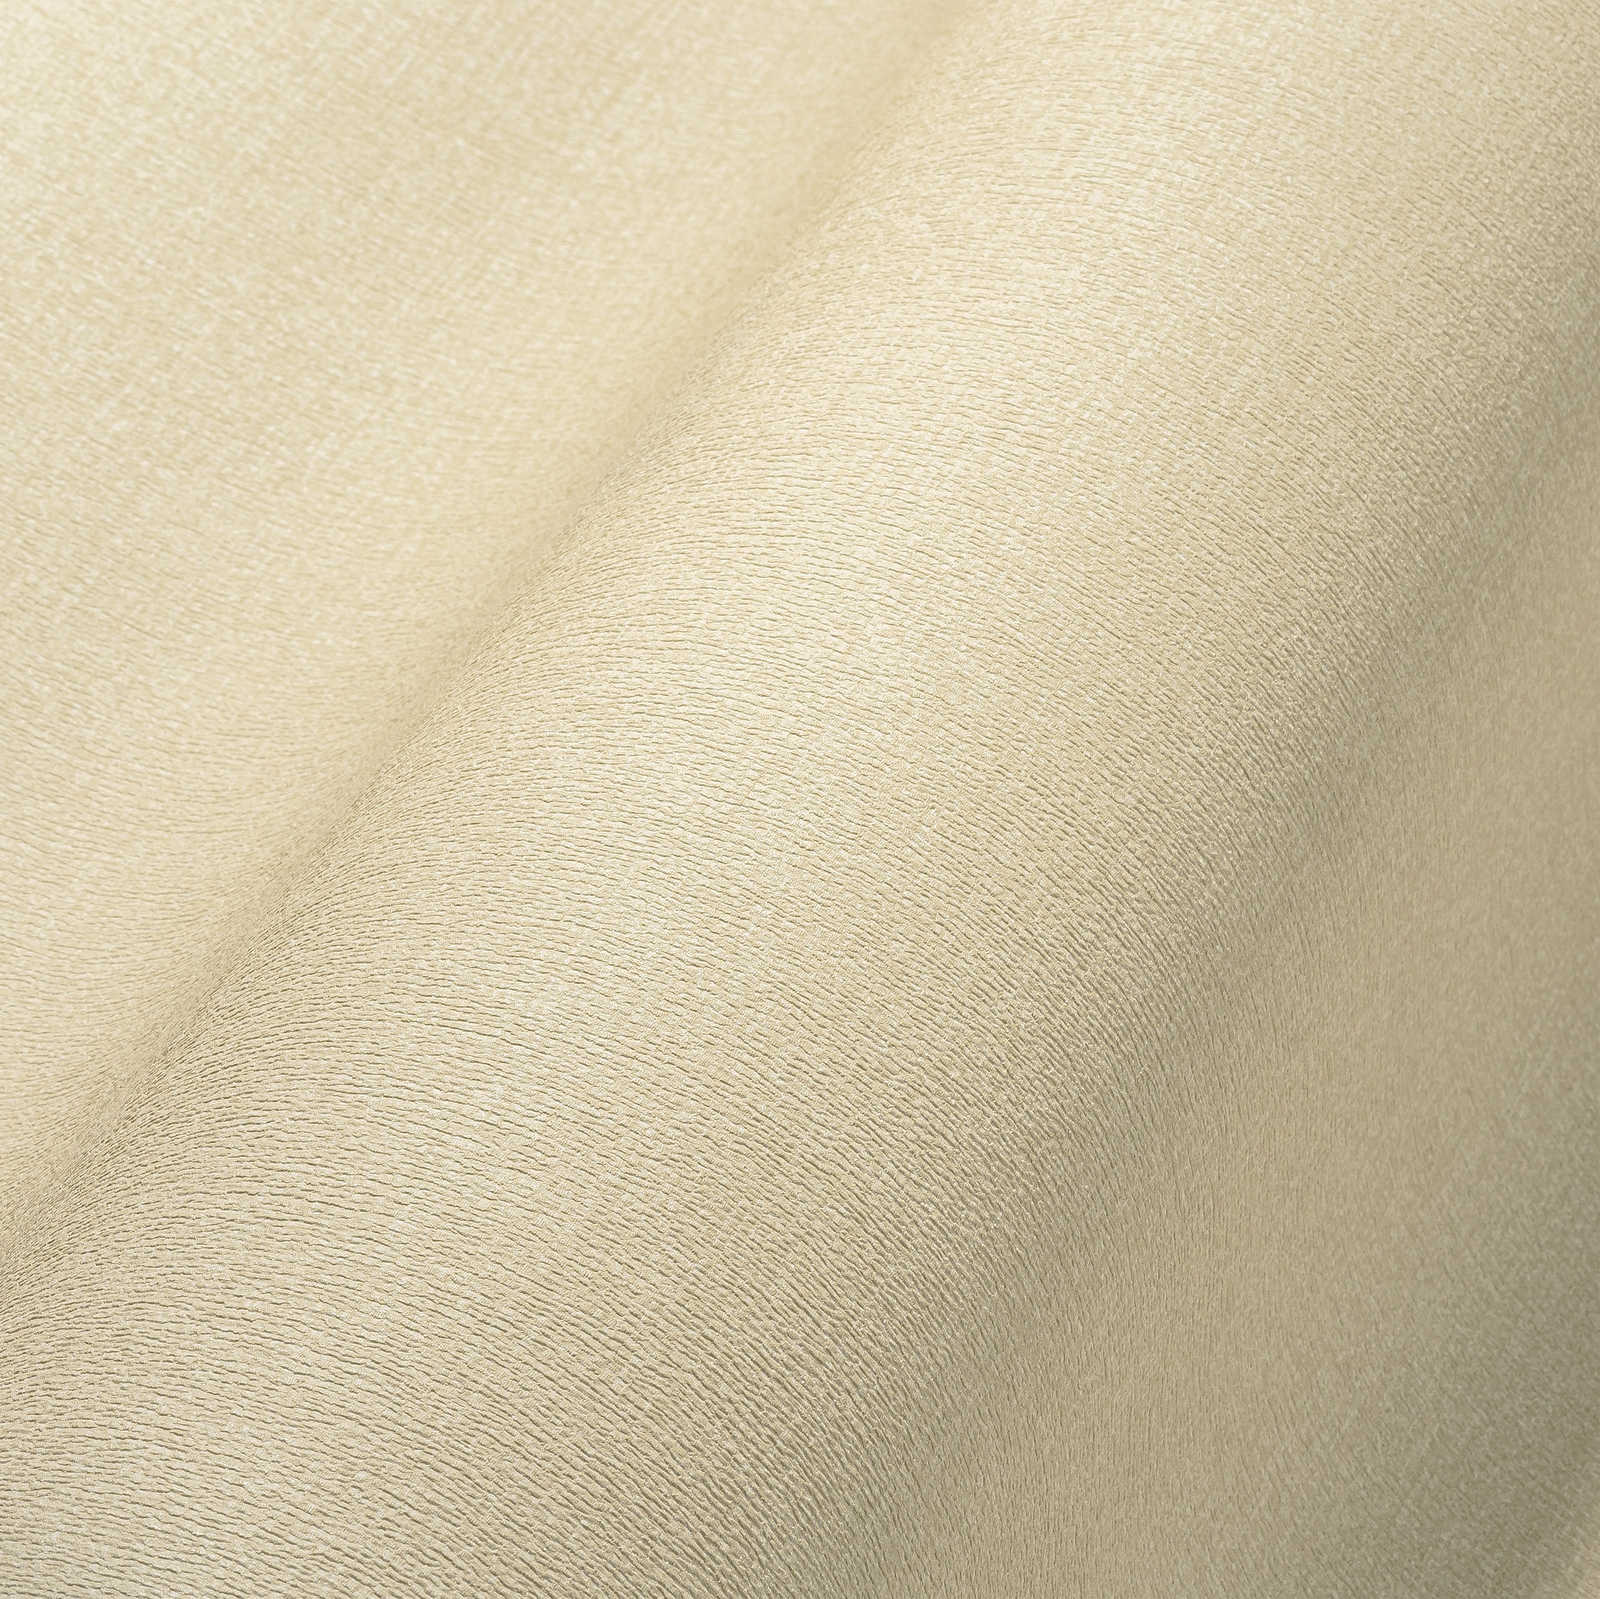             Licht gestructureerd eenheidsbehang in een warme tint - beige
        